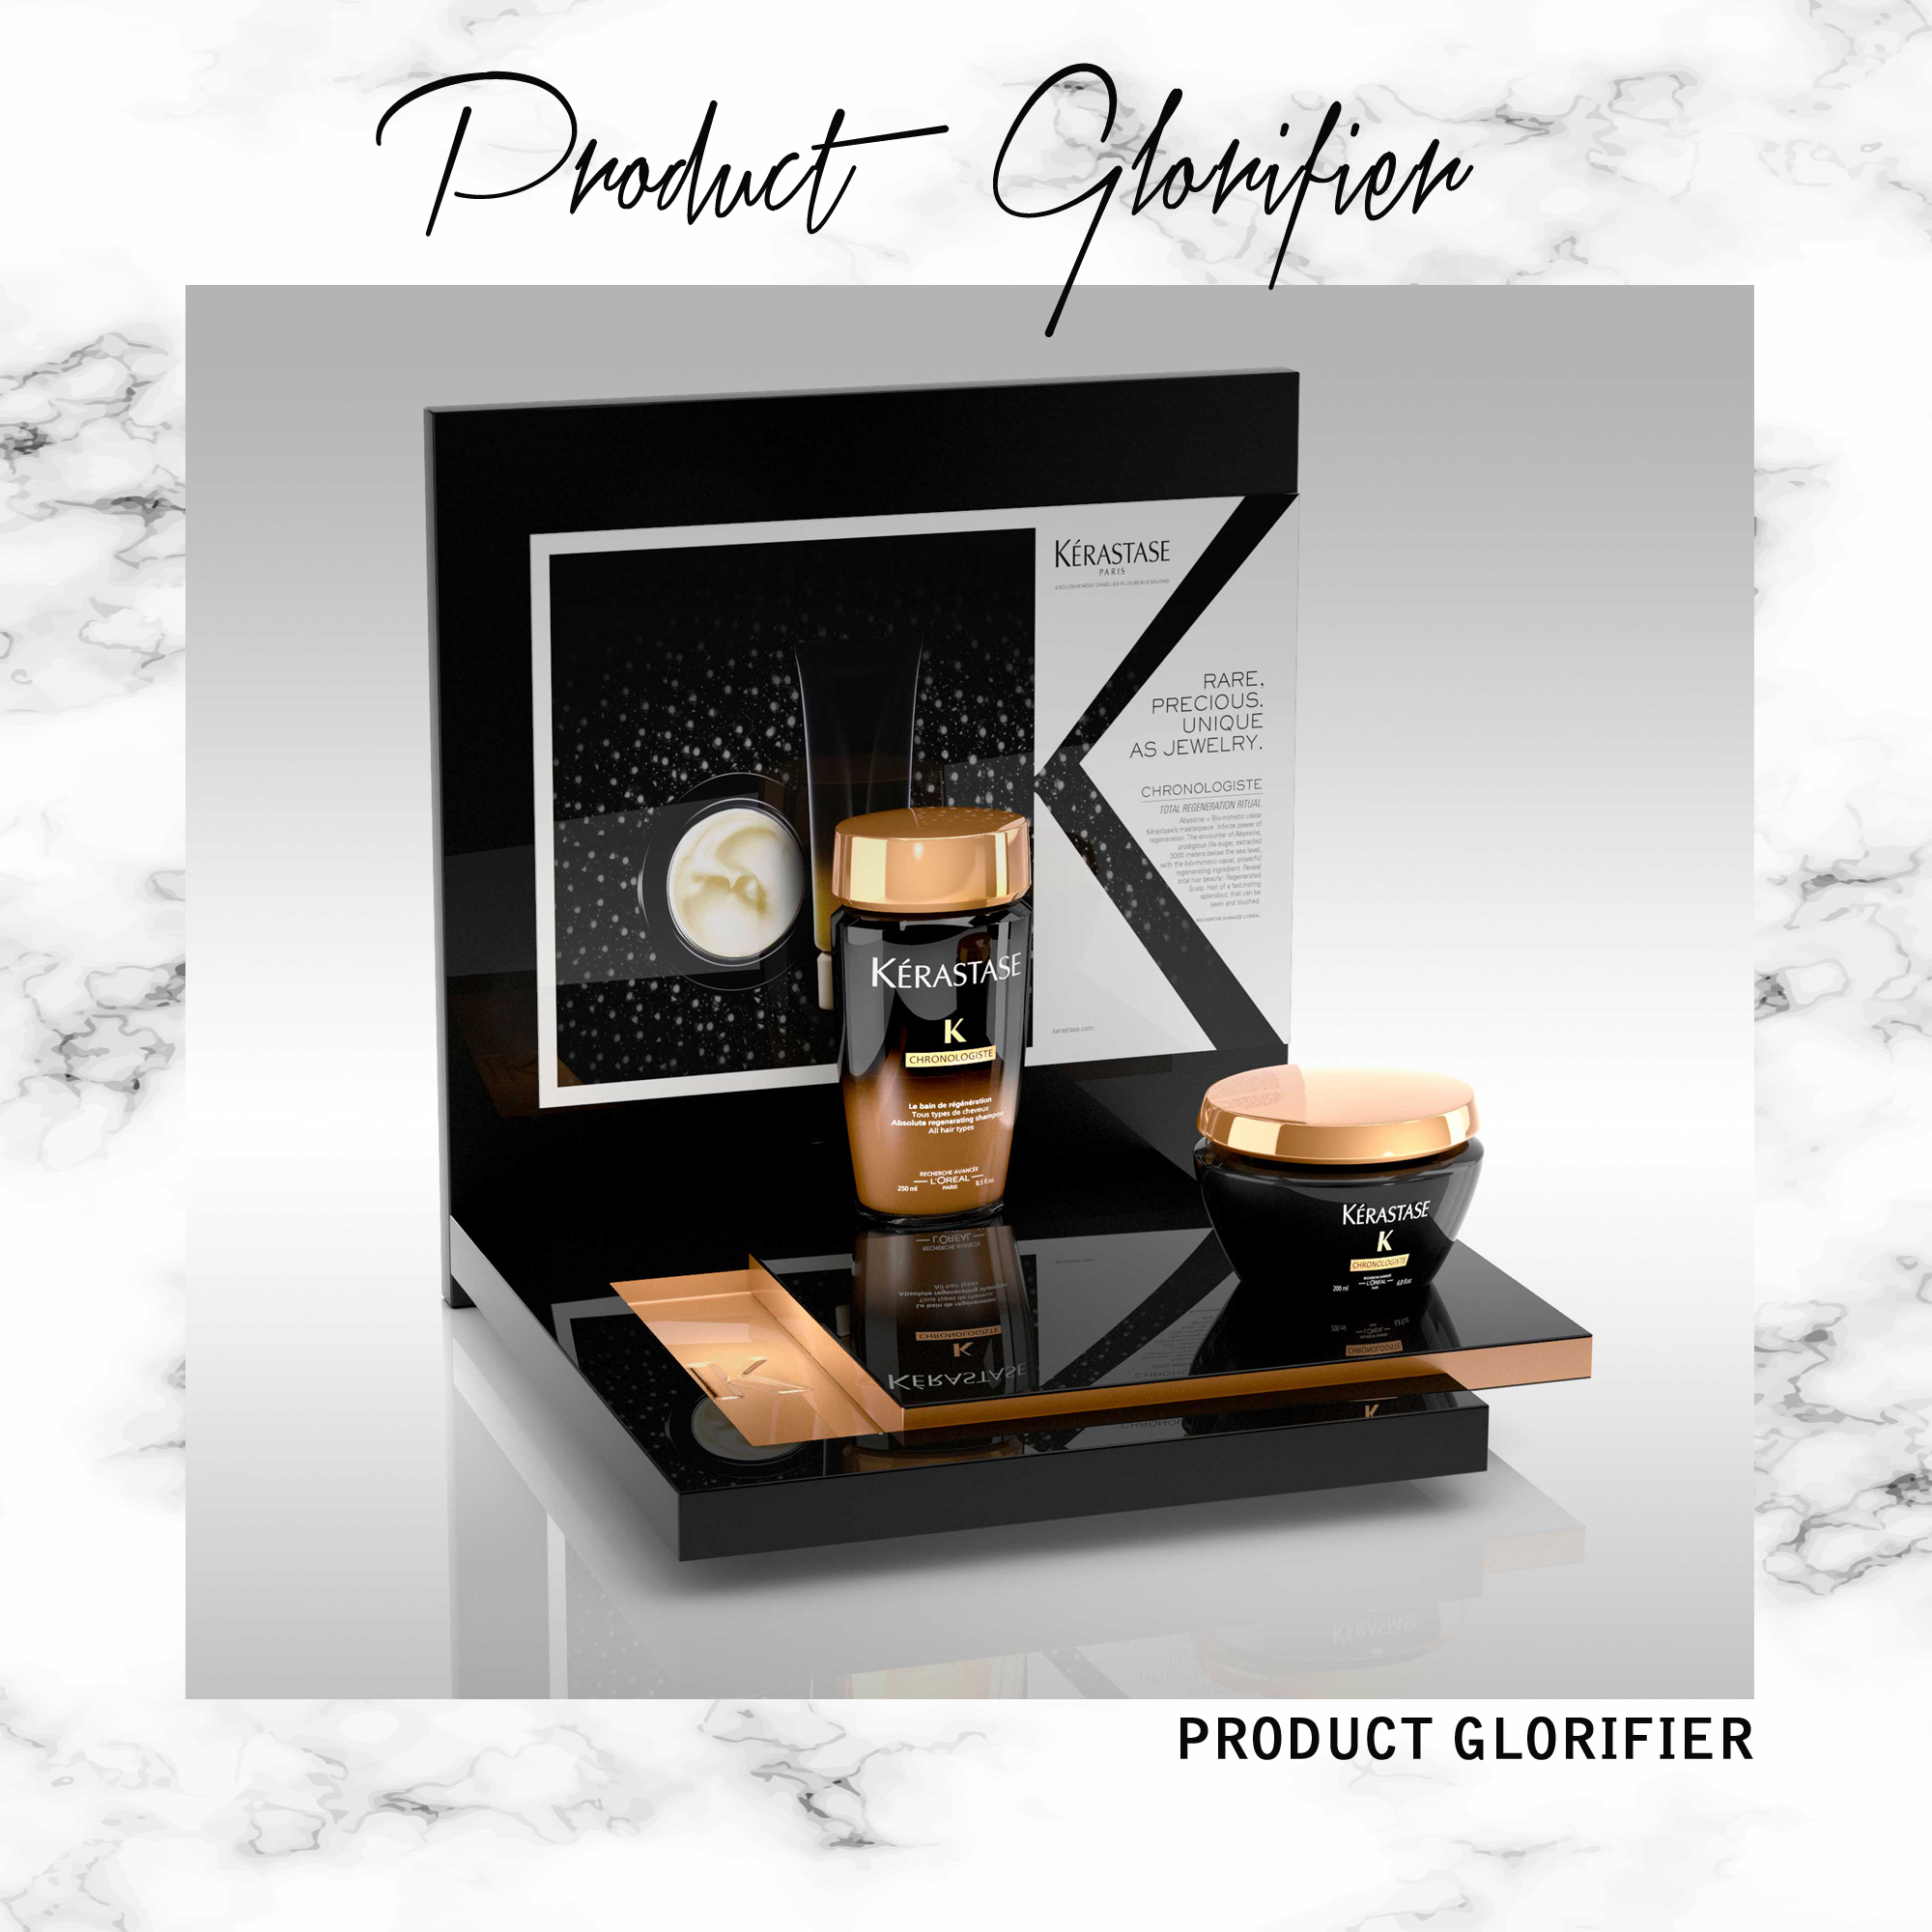 Product Glorifier